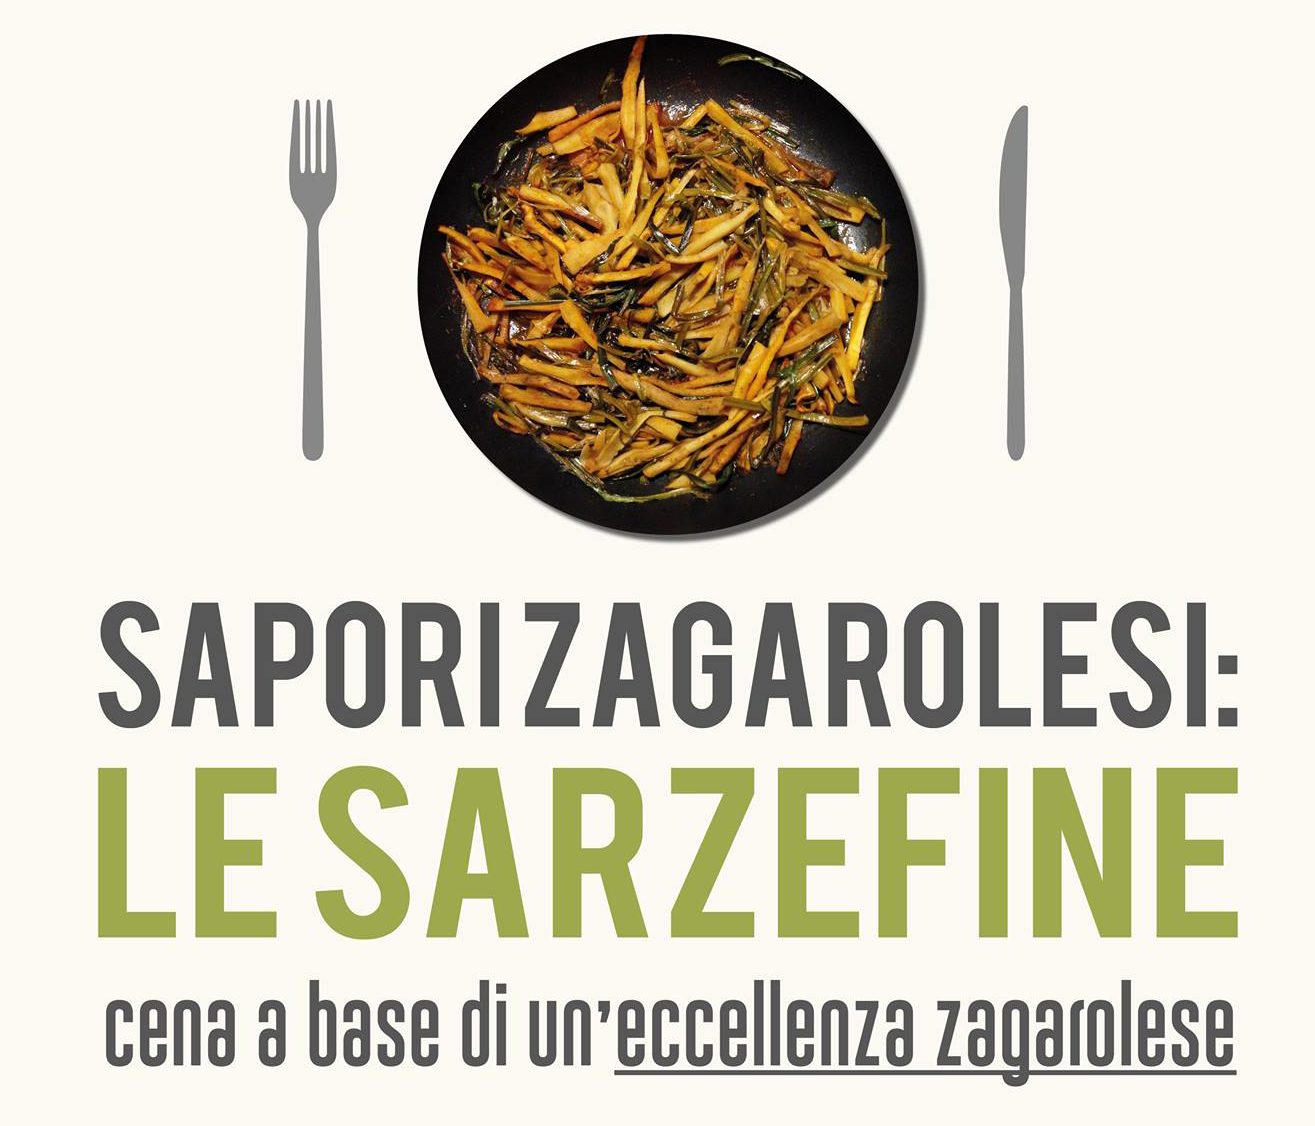 21 Gennaio – Sapori Zagarolesi: Le Sarzefine @ Palazzo Rospigliosi